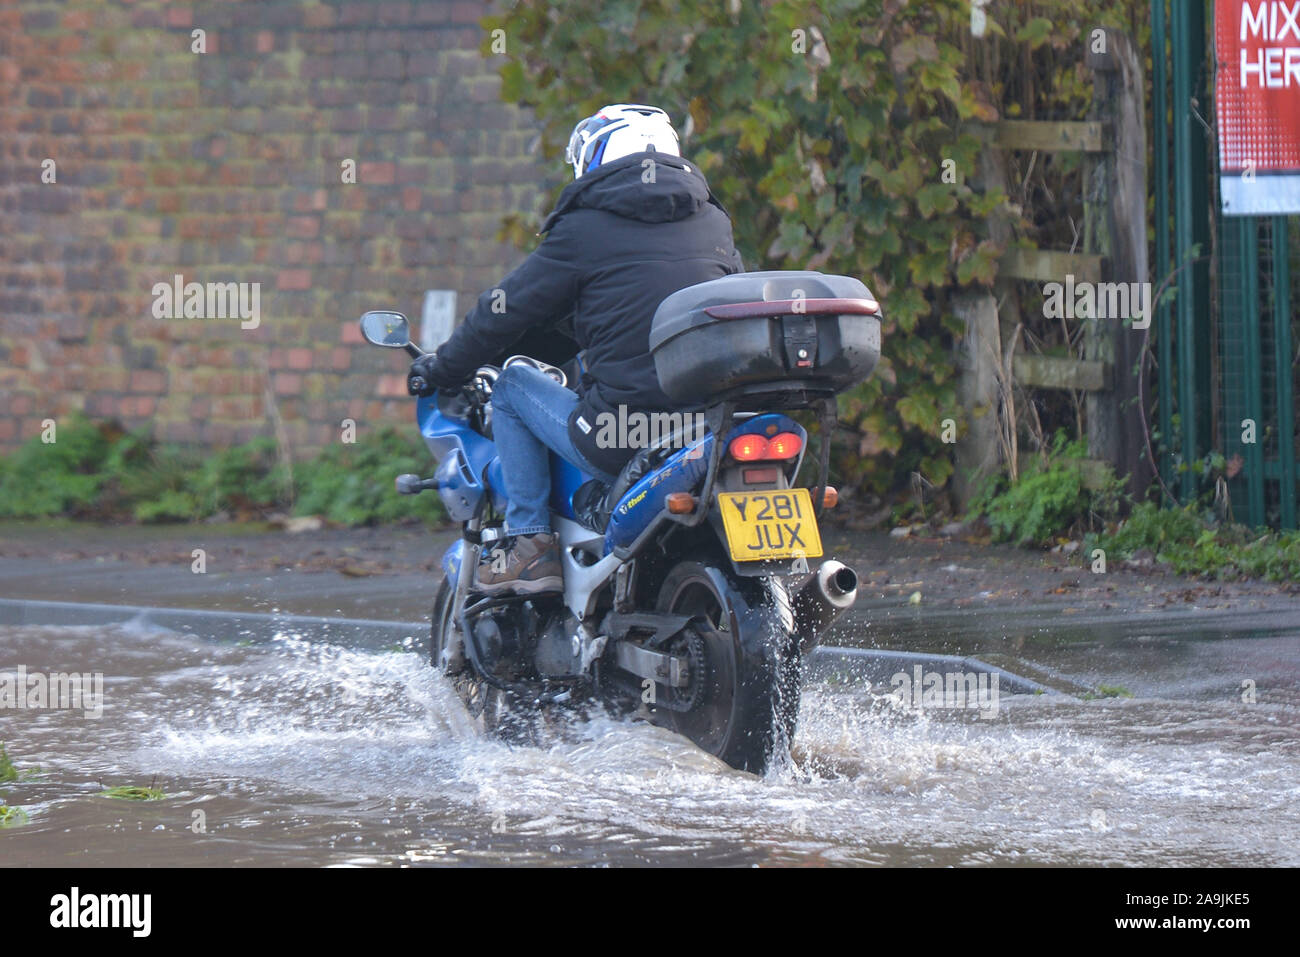 Tewkesbury Gloucestershire, Royaume-Uni. Le 16 novembre, 2019. Une moto rider frv ses jambes alors qu'il passe son chemin à travers les inondations à Tewkesbury centre-ville, ce qui a été frappé par de graves inondations comme la rivière Avon a éclaté ses banques. Le niveau des rivières continue à augmenter et devrait culminer à plus de 12 mètres au-dessus du niveau de la rivière normal tard le samedi après-midi. 16/11/2019 Pic prises. Maison De crédit : Sam/Alamy Live News Banque D'Images